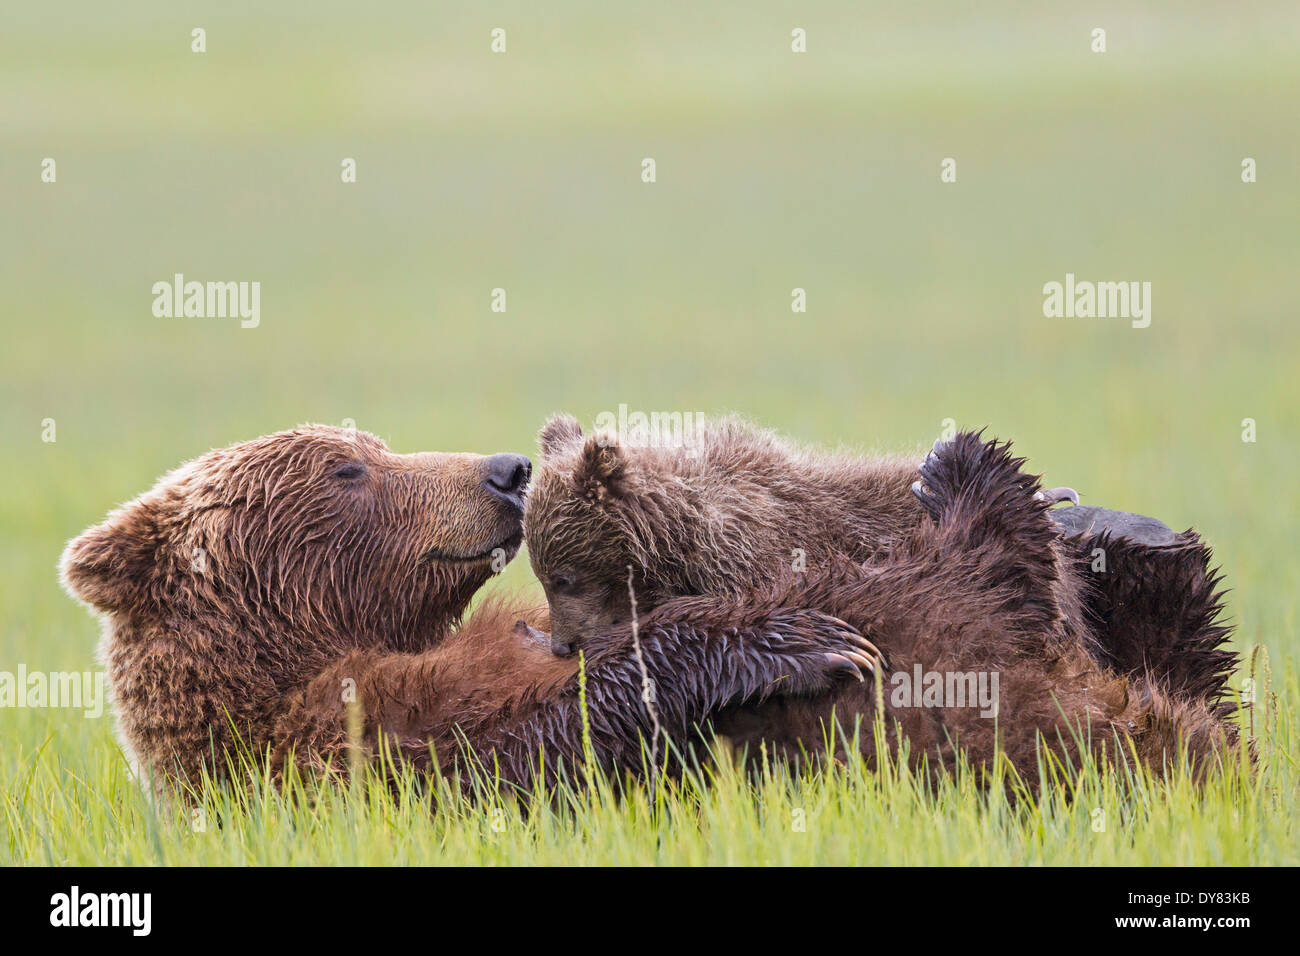 USA, Alaska, Lake Clark National Park and Preserve, Brown bear and bear cub (Ursus arctos), lactating Stock Photo